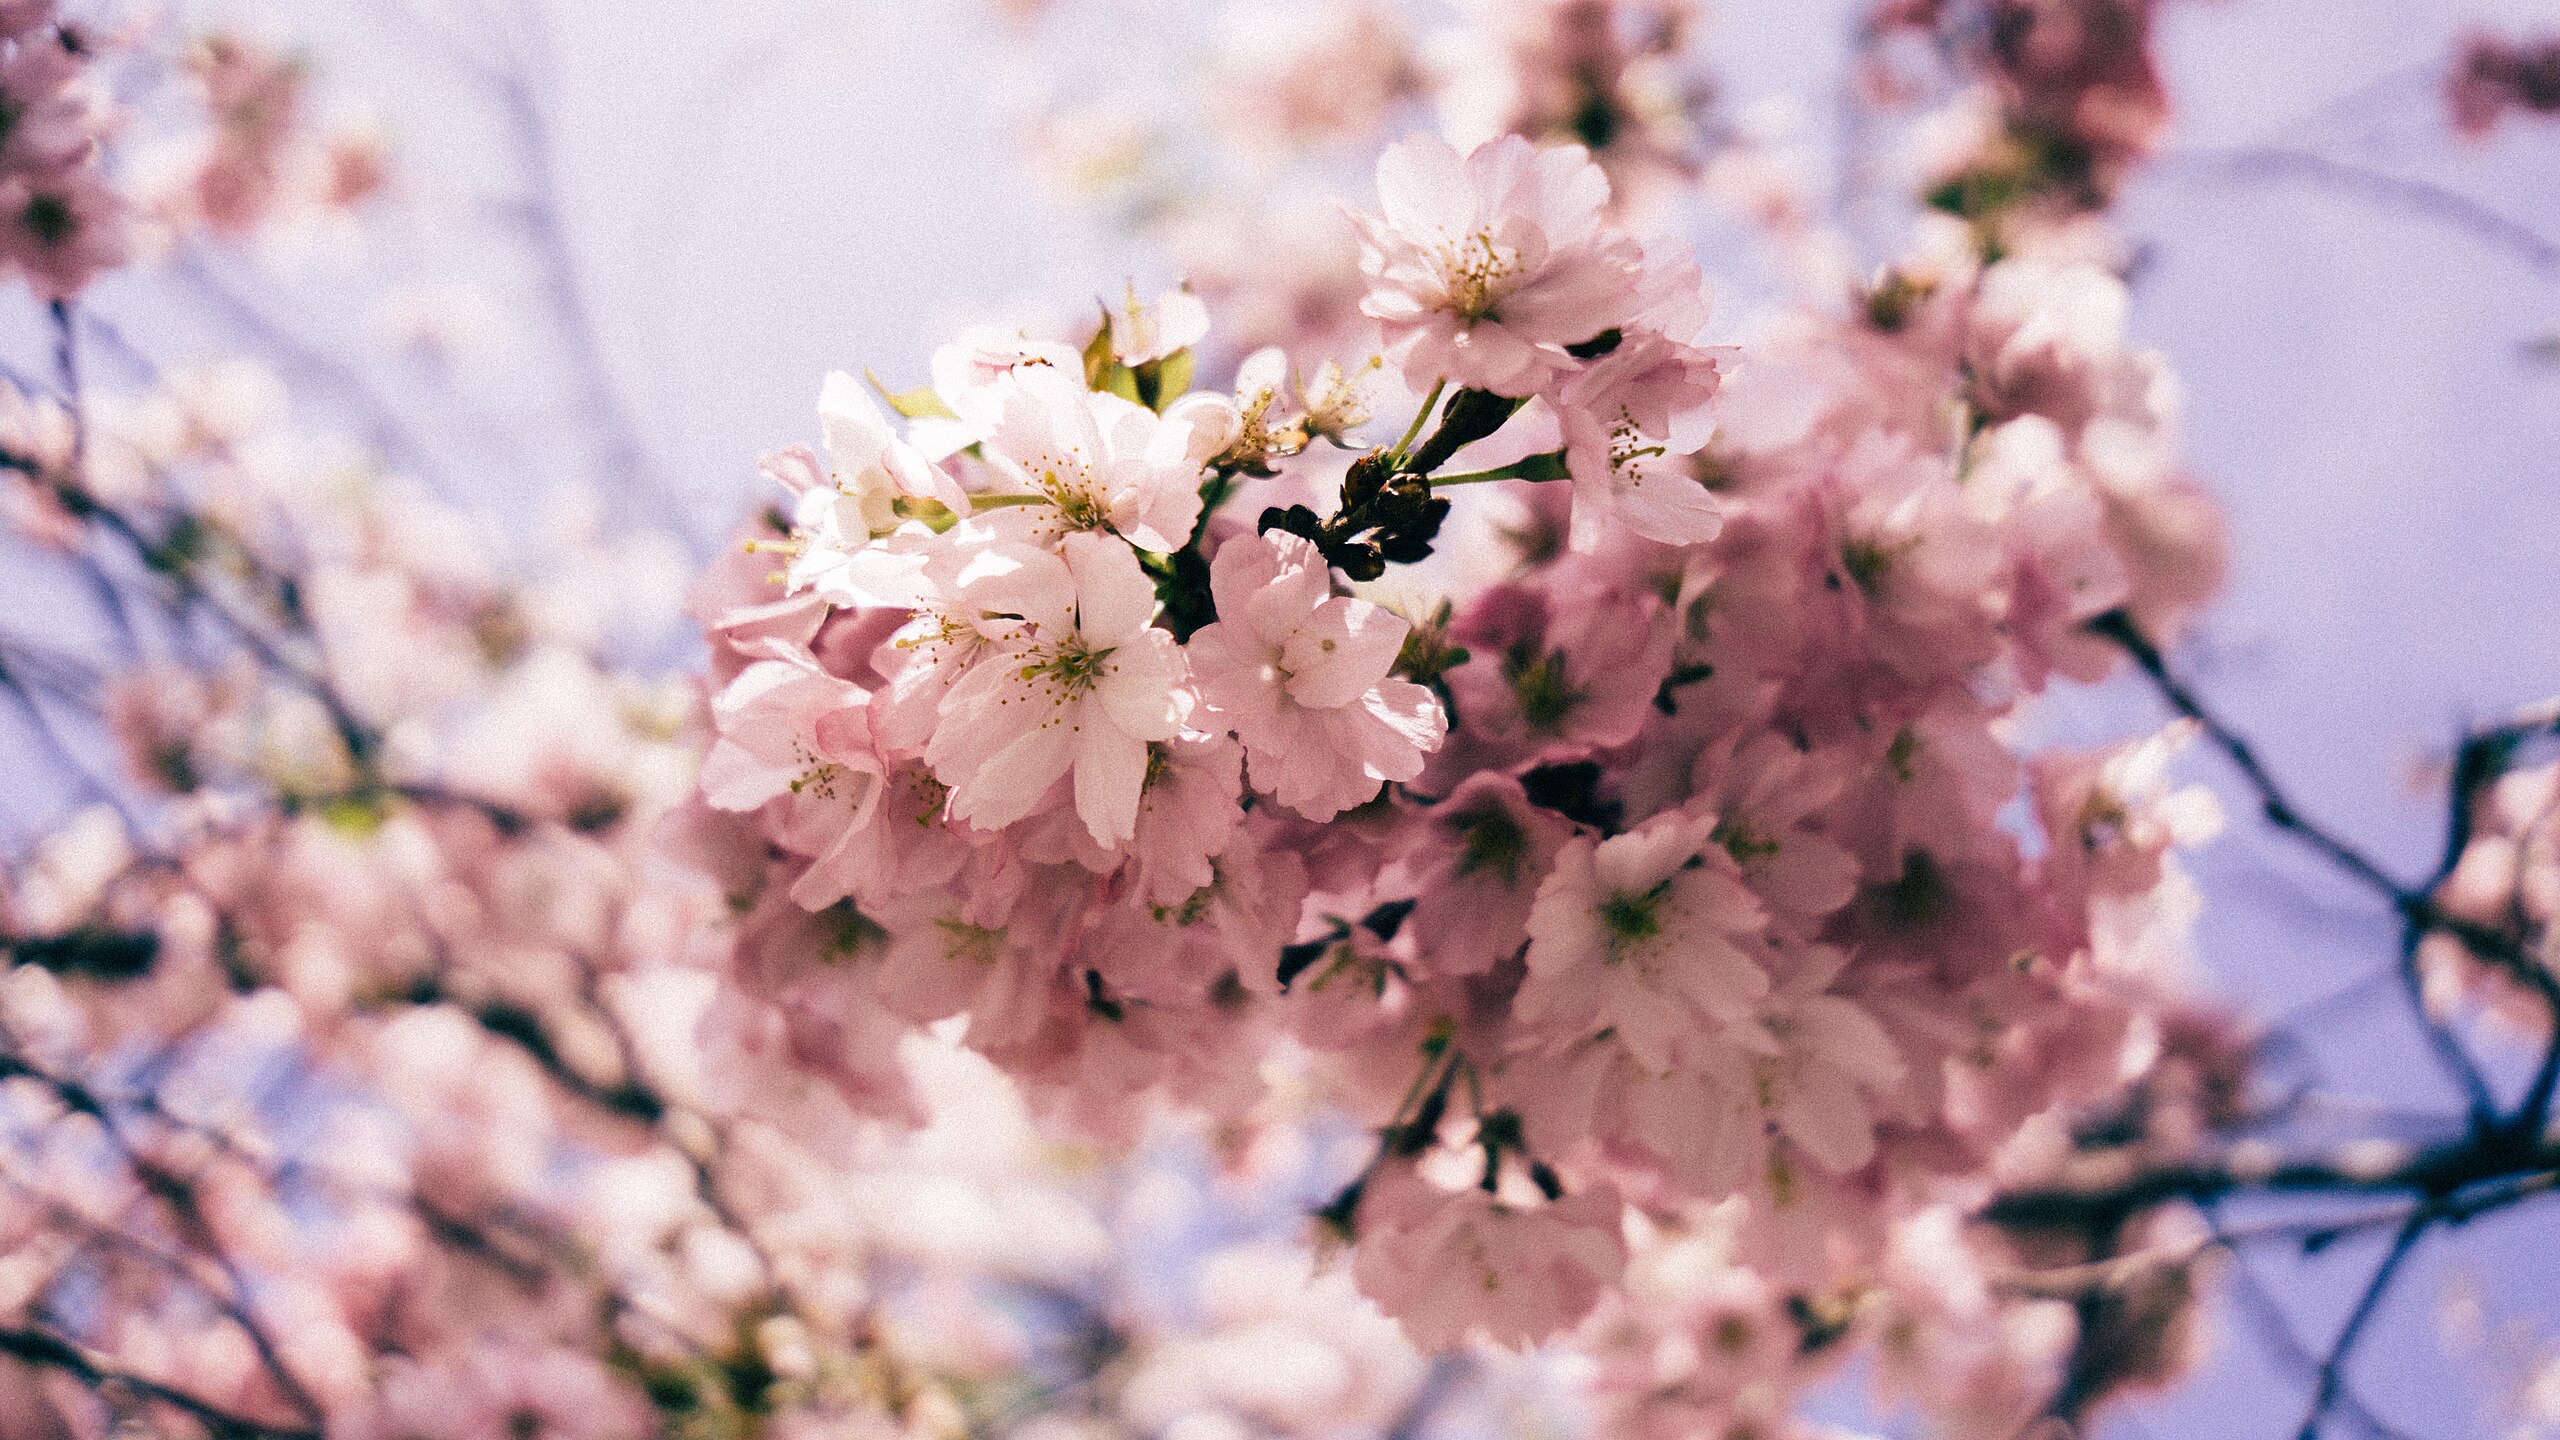 Bạn đã sẵn sàng để chào đón mùa xuân mới đầy năng lượng và sự hứng khởi chưa? Những hình ảnh đầy màu sắc và đẹp mắt sẽ mang đến cho bạn một trải nghiệm mới mẻ, sáng tạo và đầy cảm hứng.